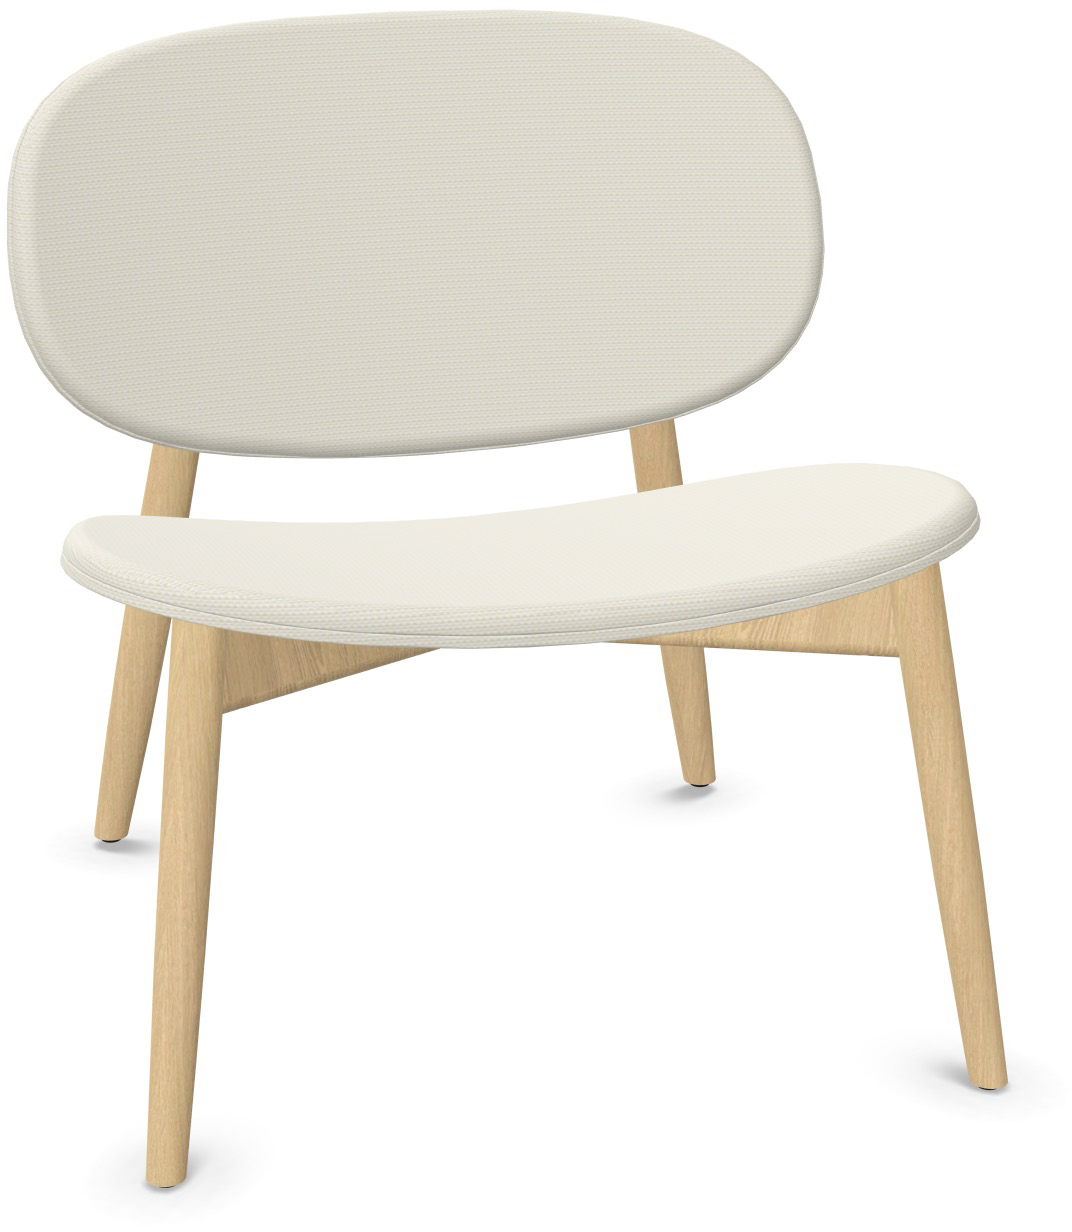 HARMO Relaxsessel in Sandweiss präsentiert im Onlineshop von KAQTU Design AG. Sessel ist von Infiniti Design